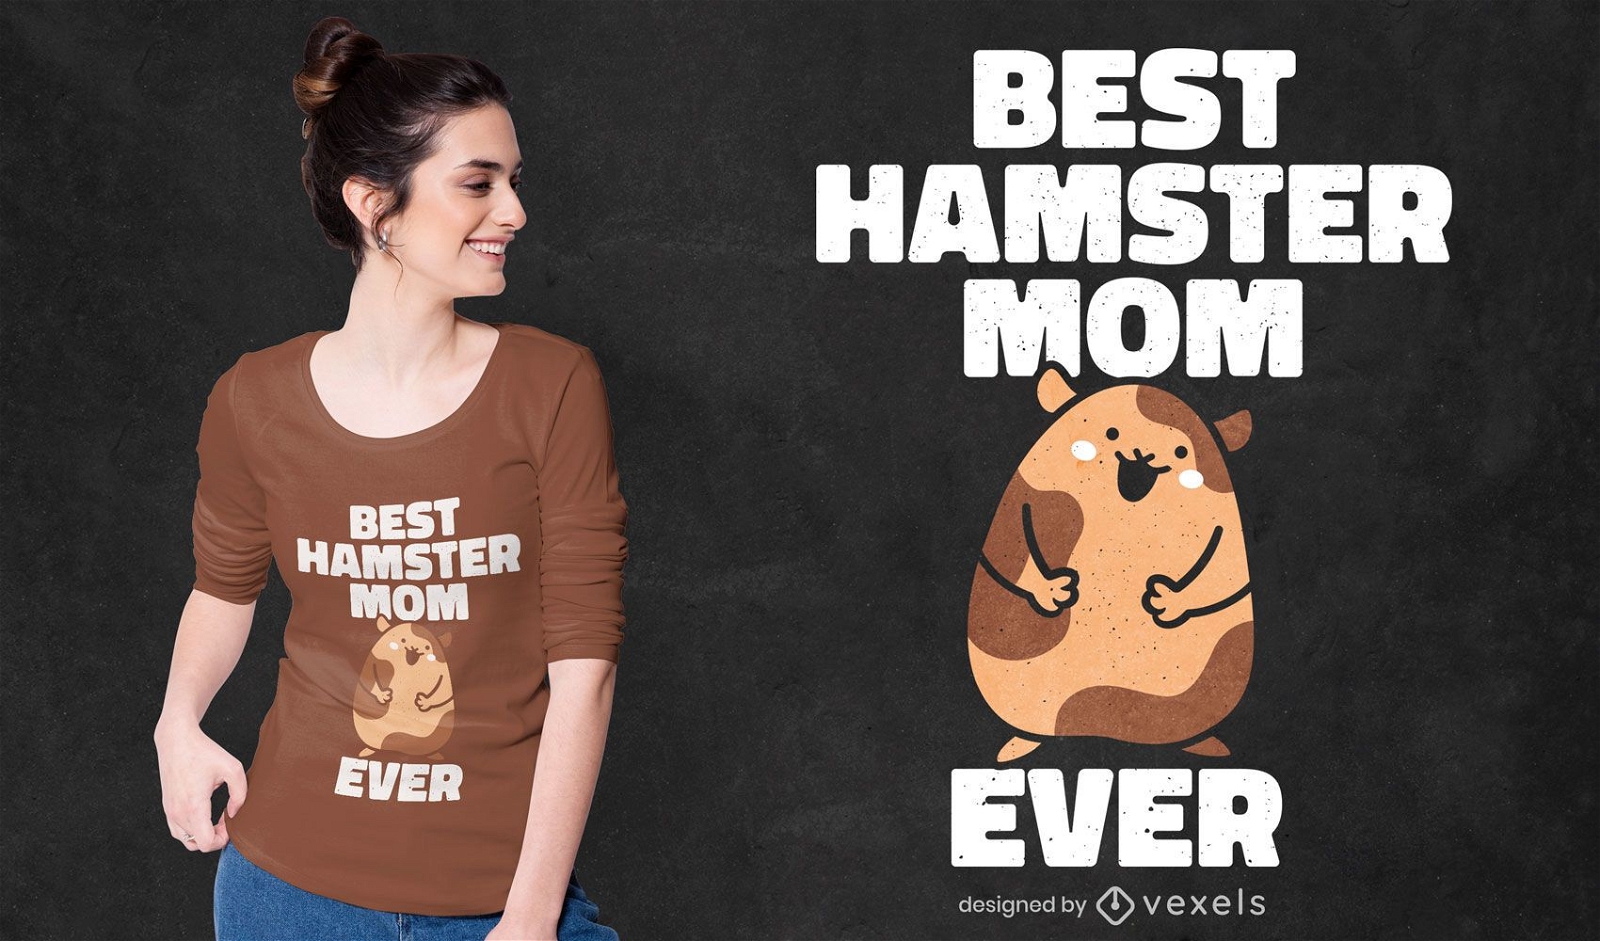 Best hamster mom t-shirt design